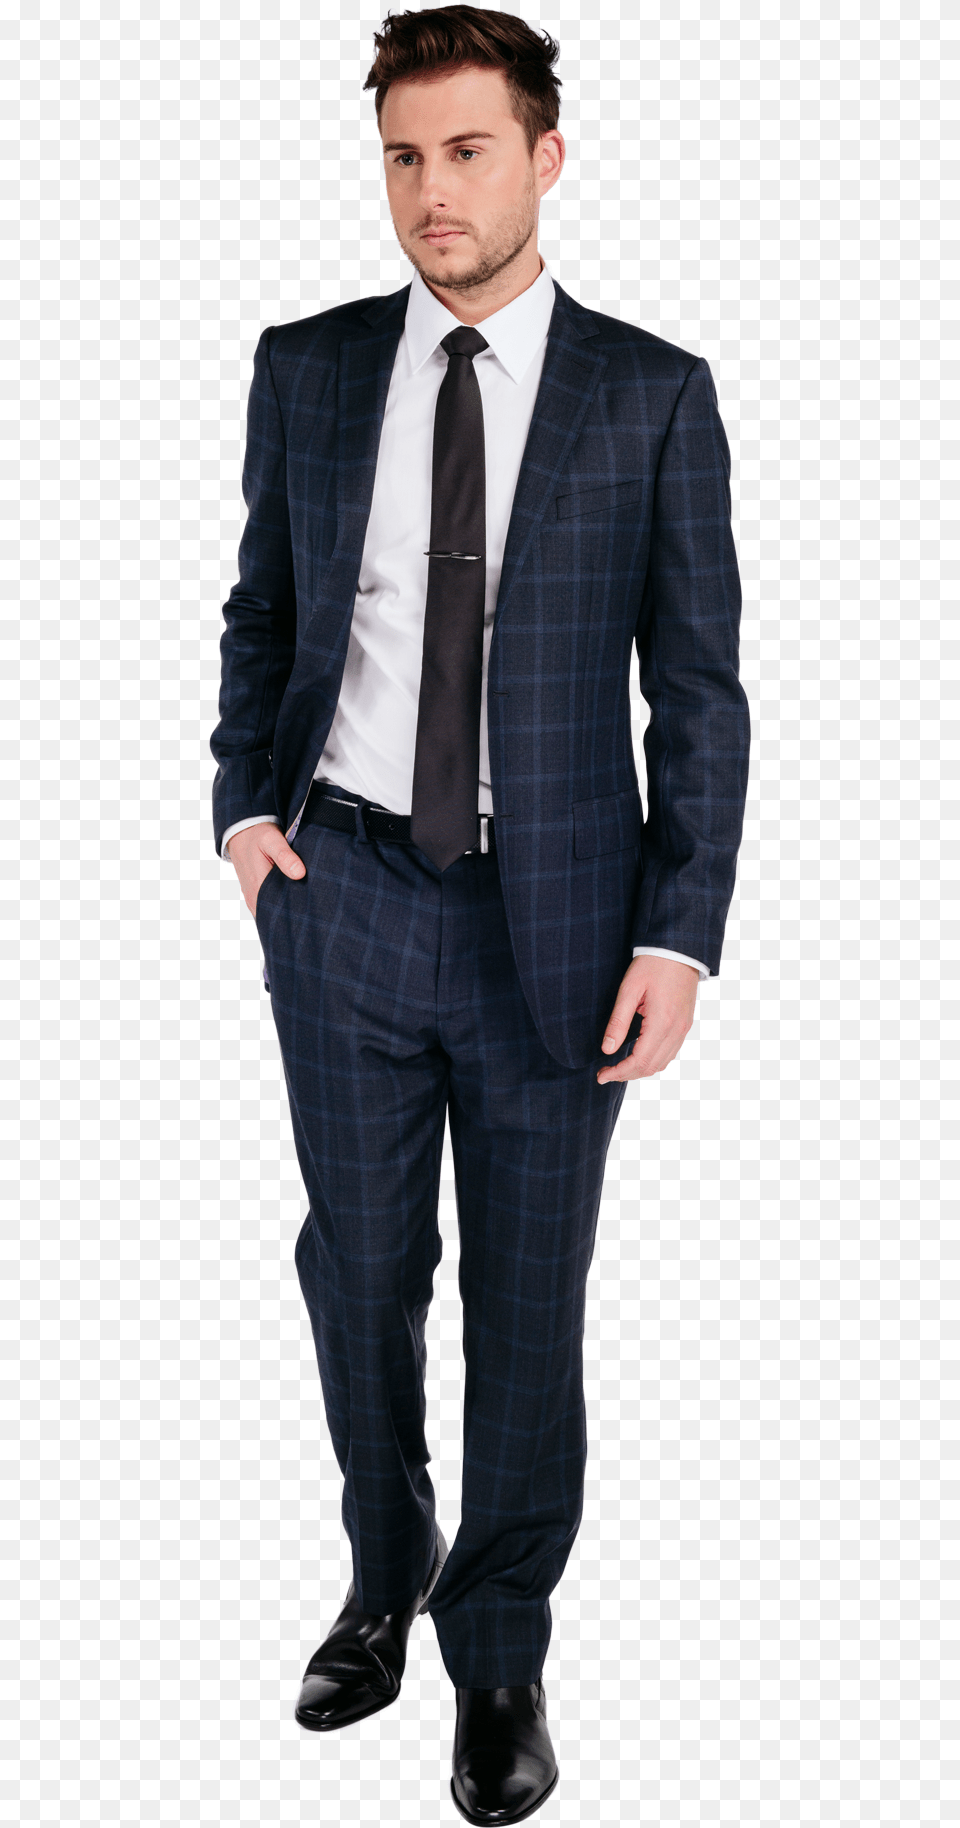 Full Body Man In Suit, Accessories, Tie, Tuxedo, Formal Wear Png